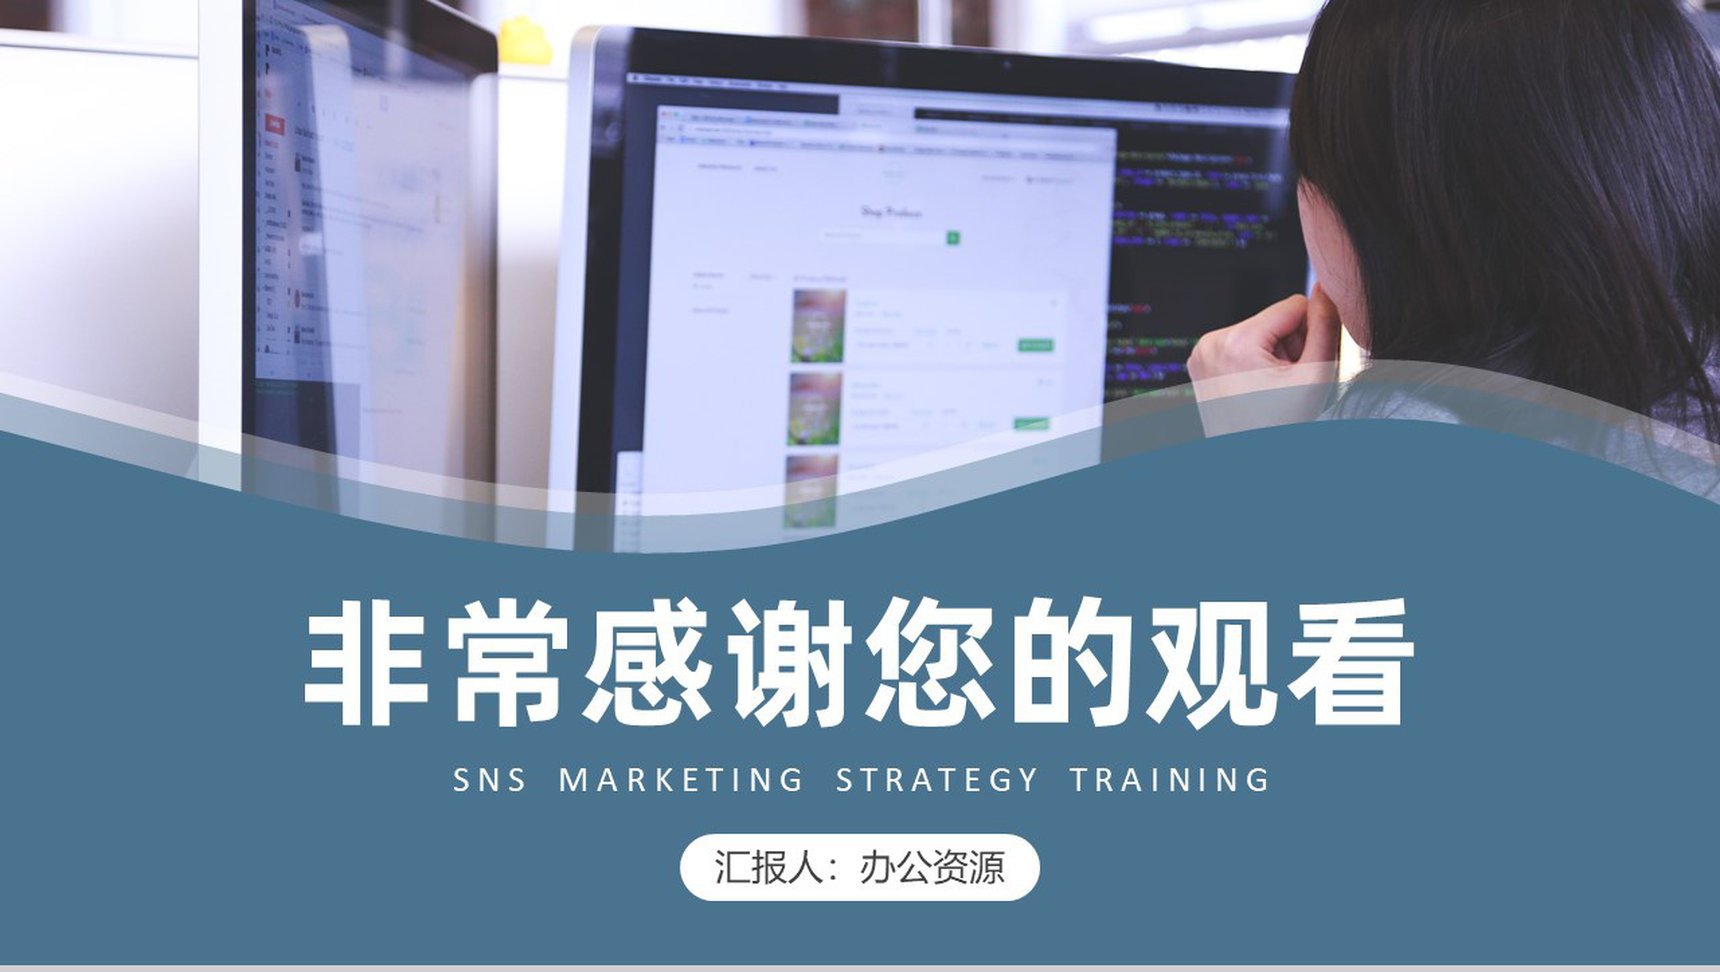 营销能力培训企业SNS跨境电子商务营销培训PPT模板-9